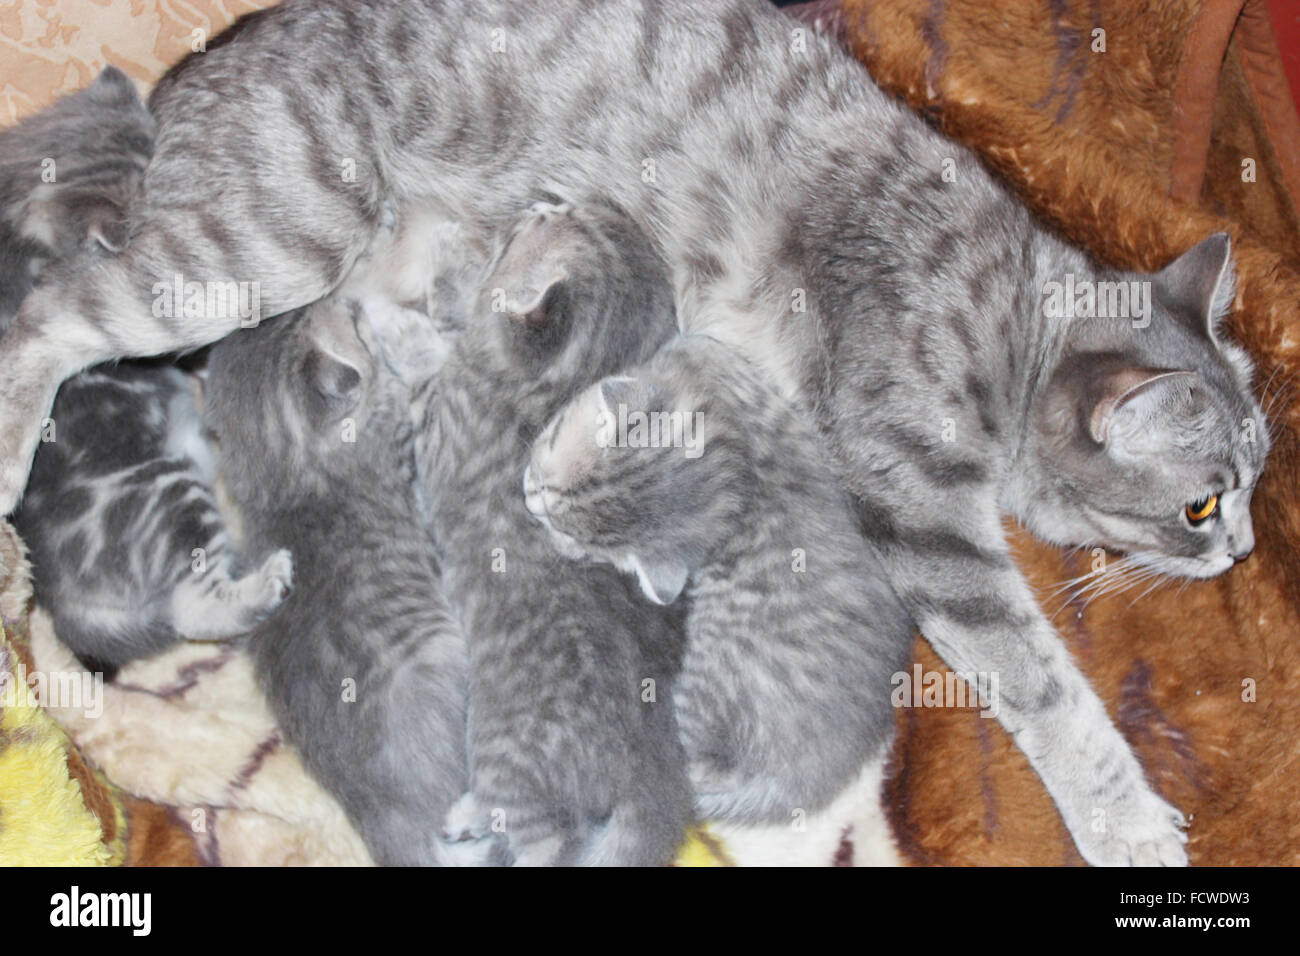 cat and its newborn kittens of Scottish Straight breed Stock Photo